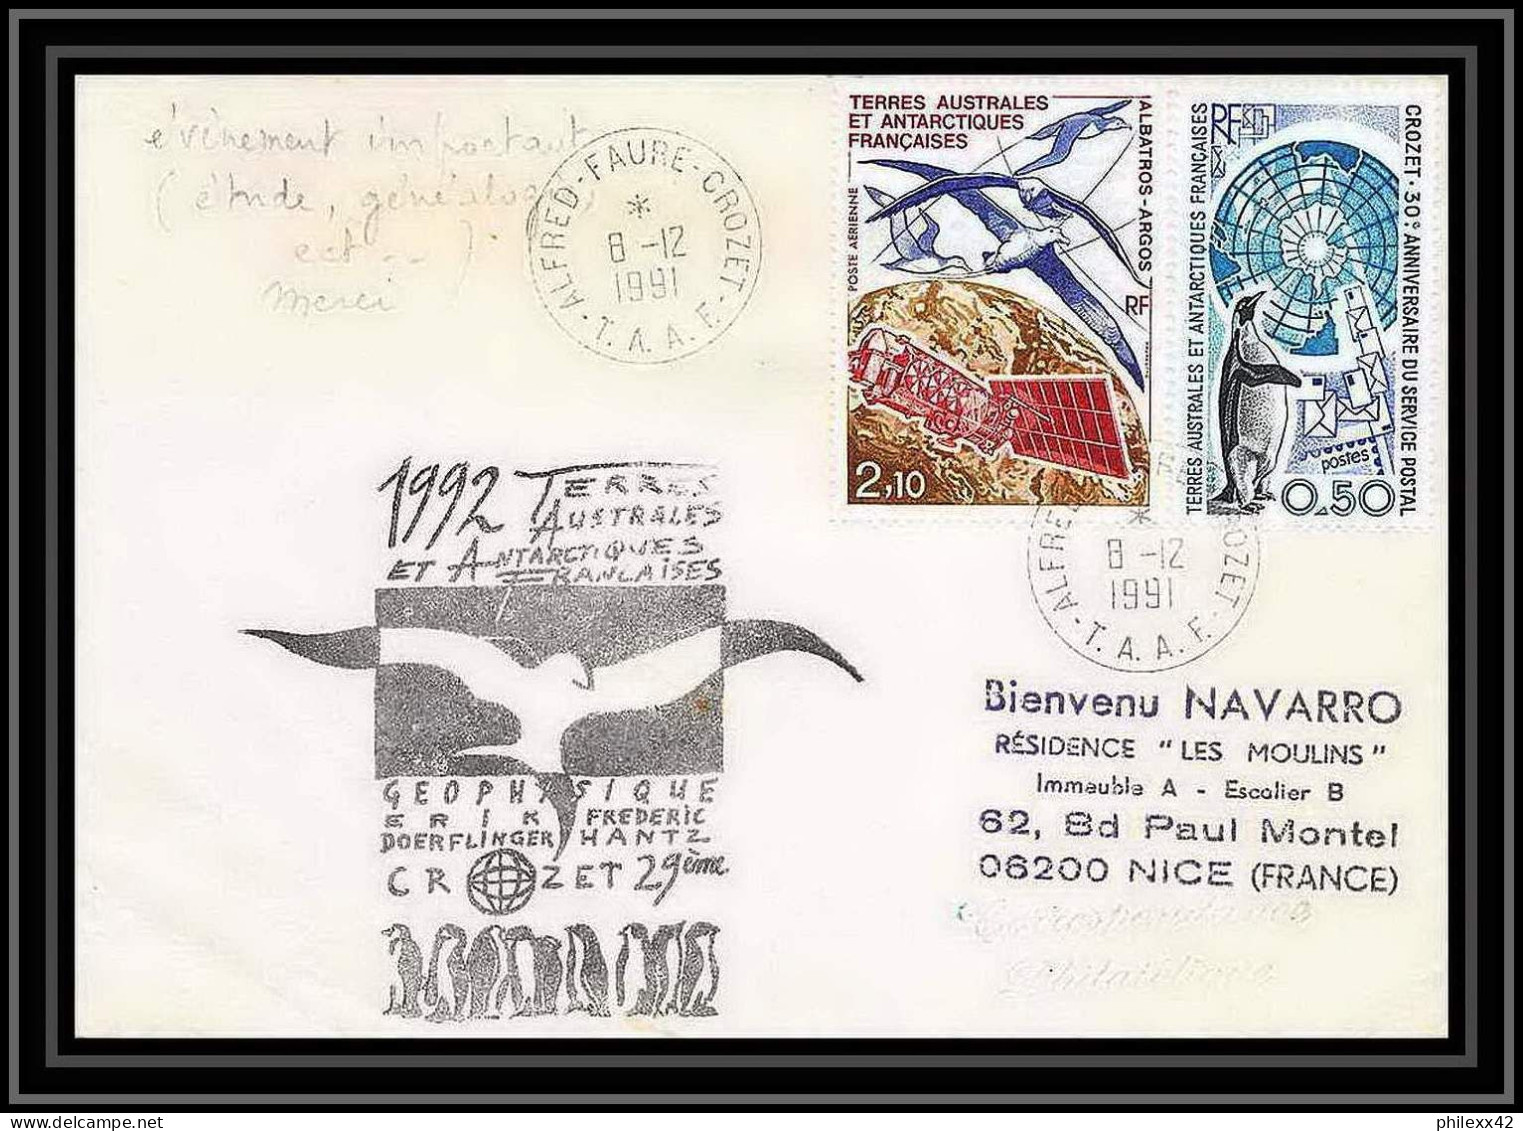 1800 Geophysique Hantz 8/12/1991 TAAF Antarctic Terres Australes Lettre (cover) - Lettres & Documents